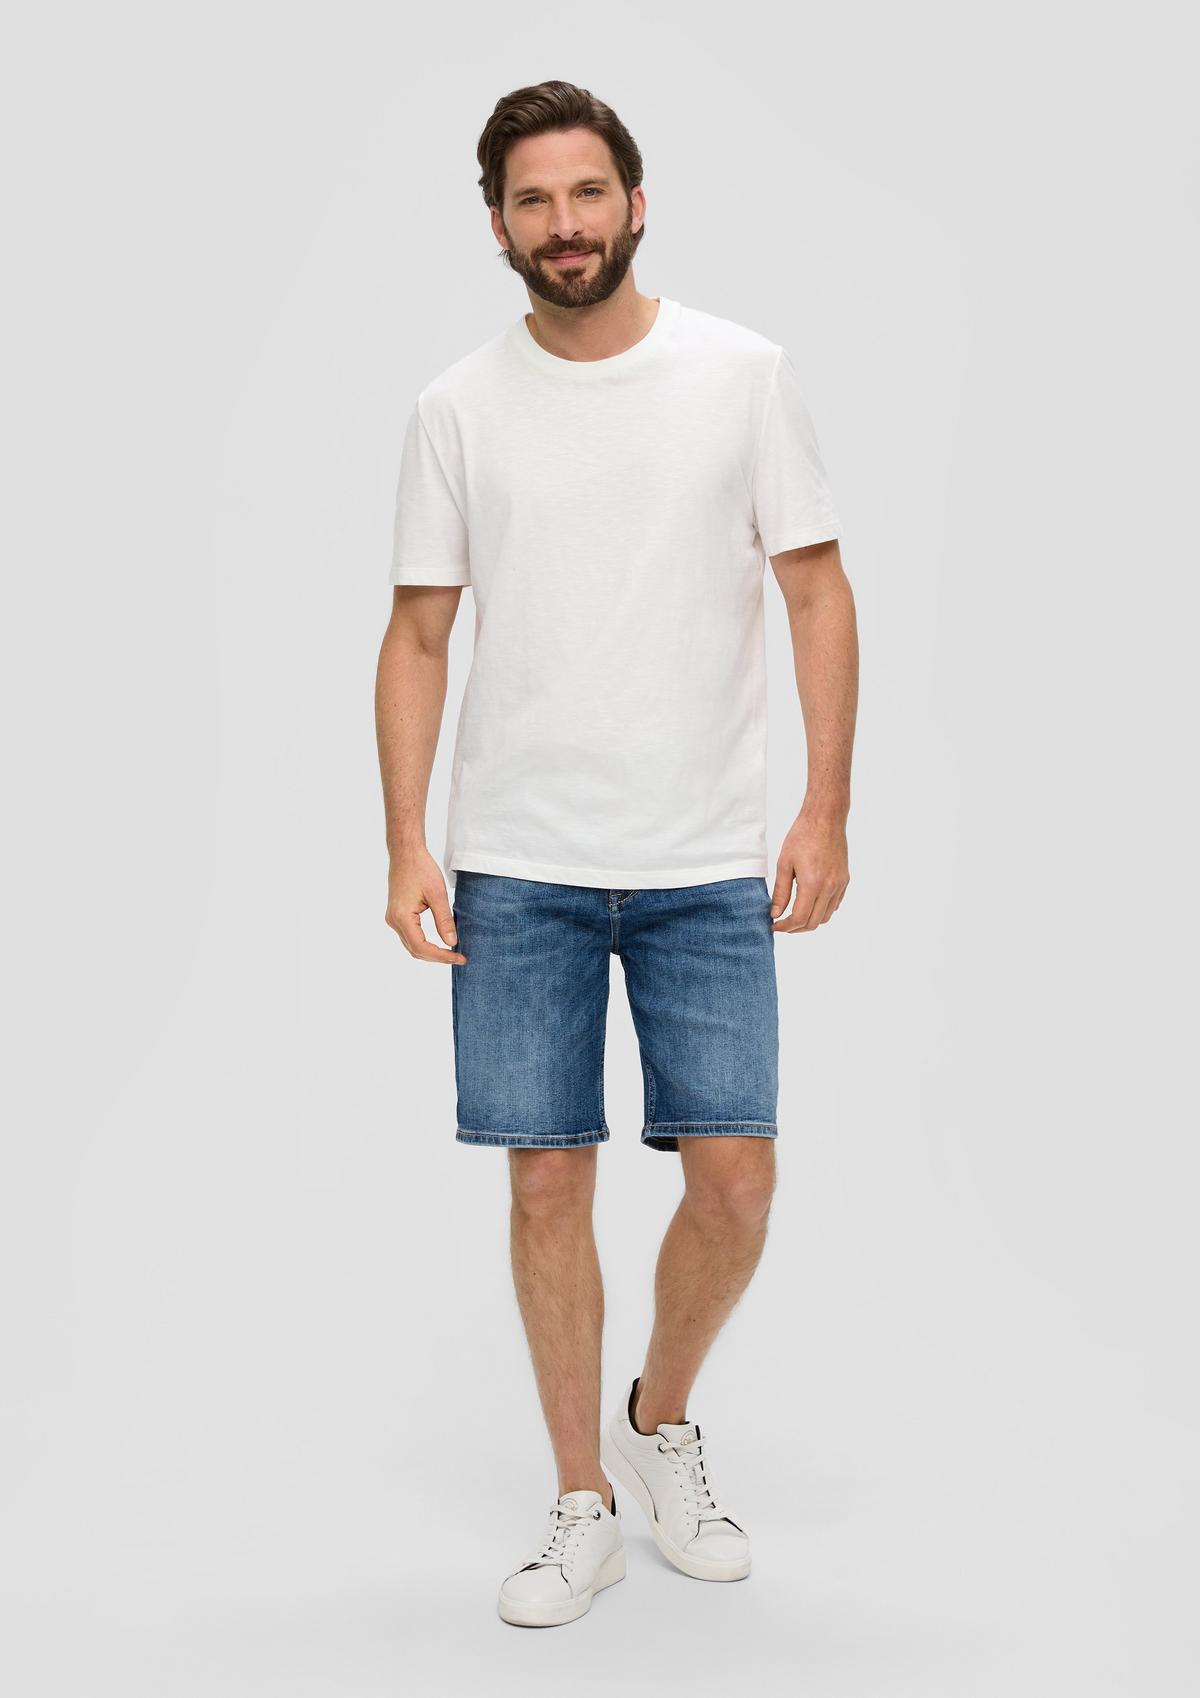 Jeans kratke hlače/kroj Regular Fit/Mid Rise/ravne hlačnice